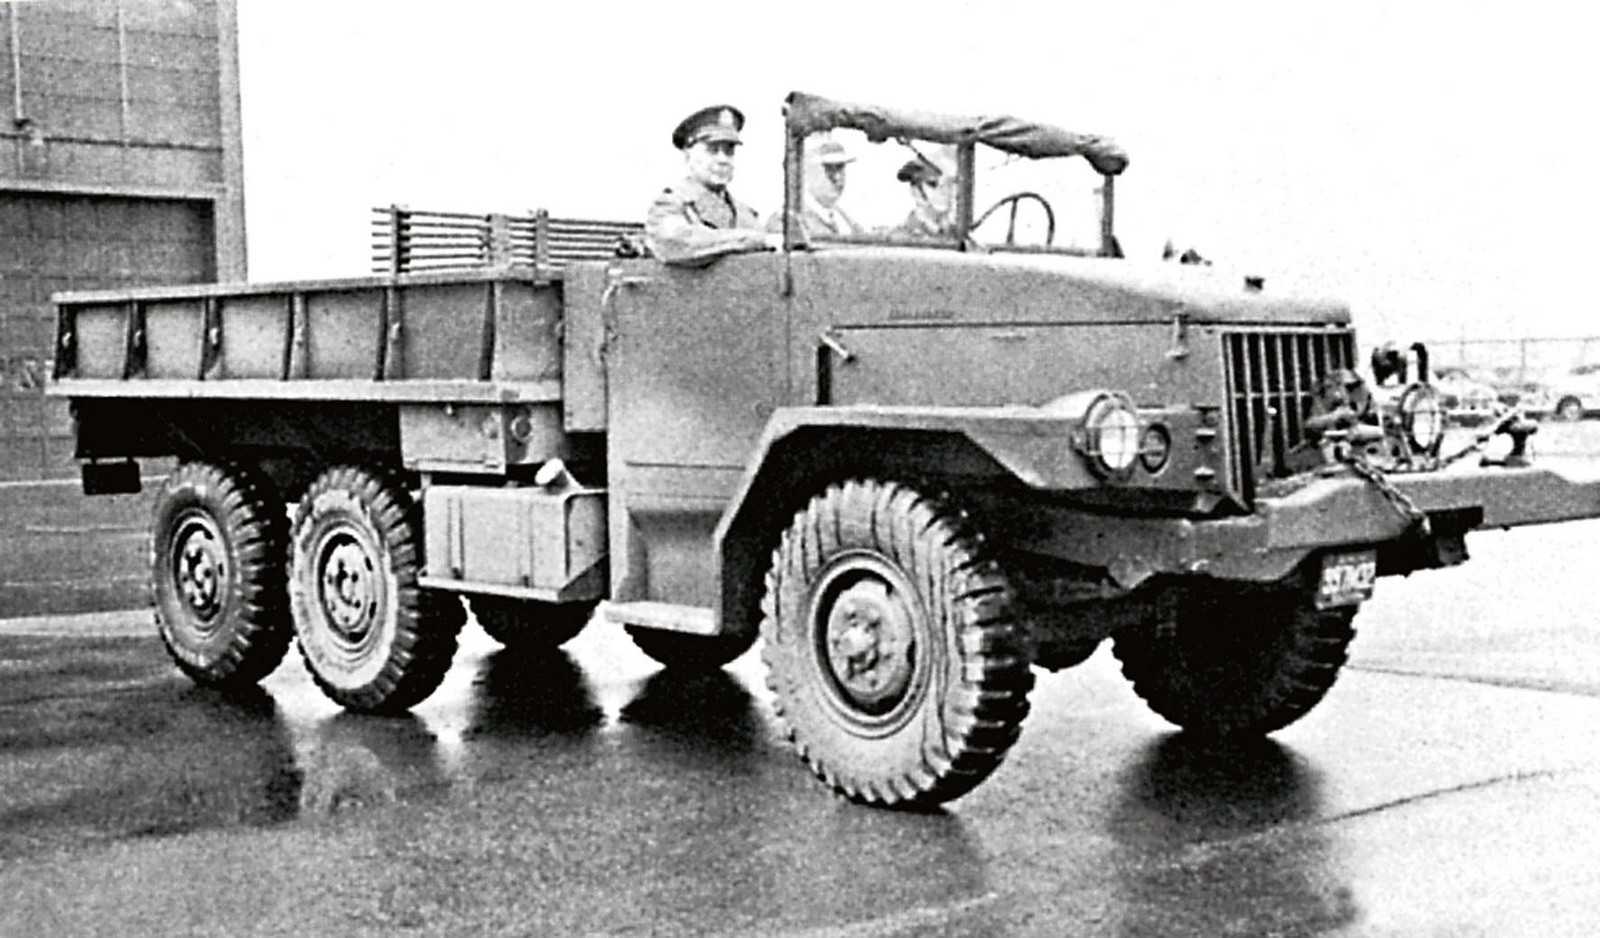 В период Великой отечественной войны установки “Катюша” монтировались на американские Studebaker Объяснить это можно тем, что в Советском Союзе активно трудились над созданием бронетехники, а грузовики принимали по ленд-лизу